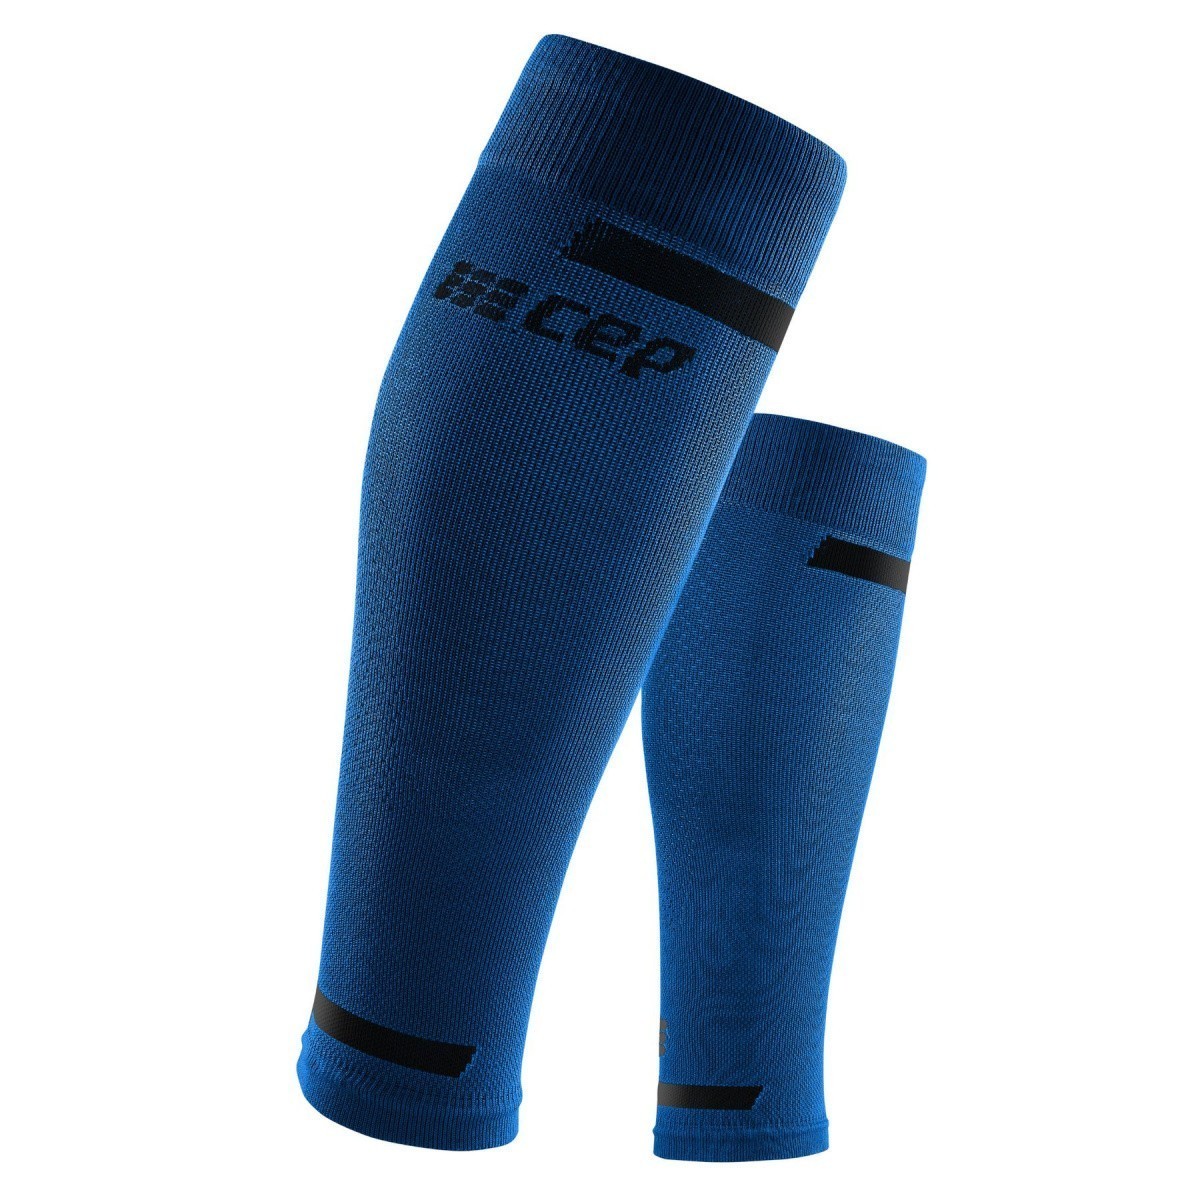 Компрессионные гетры CEP для спорта, женские женские компрессионные носки cep griptech для игровых видов спорта